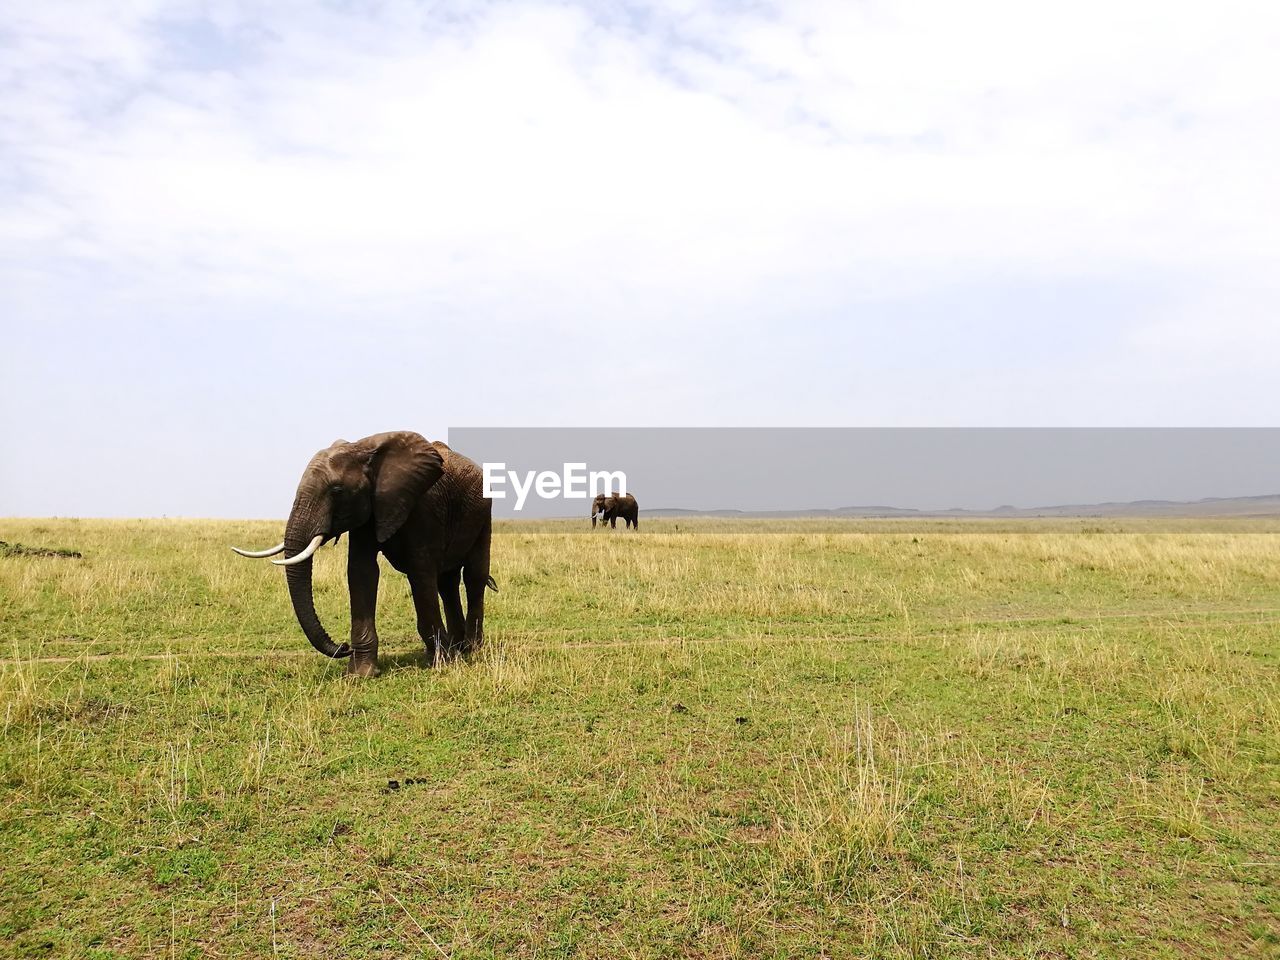 Elephant grazing in a field